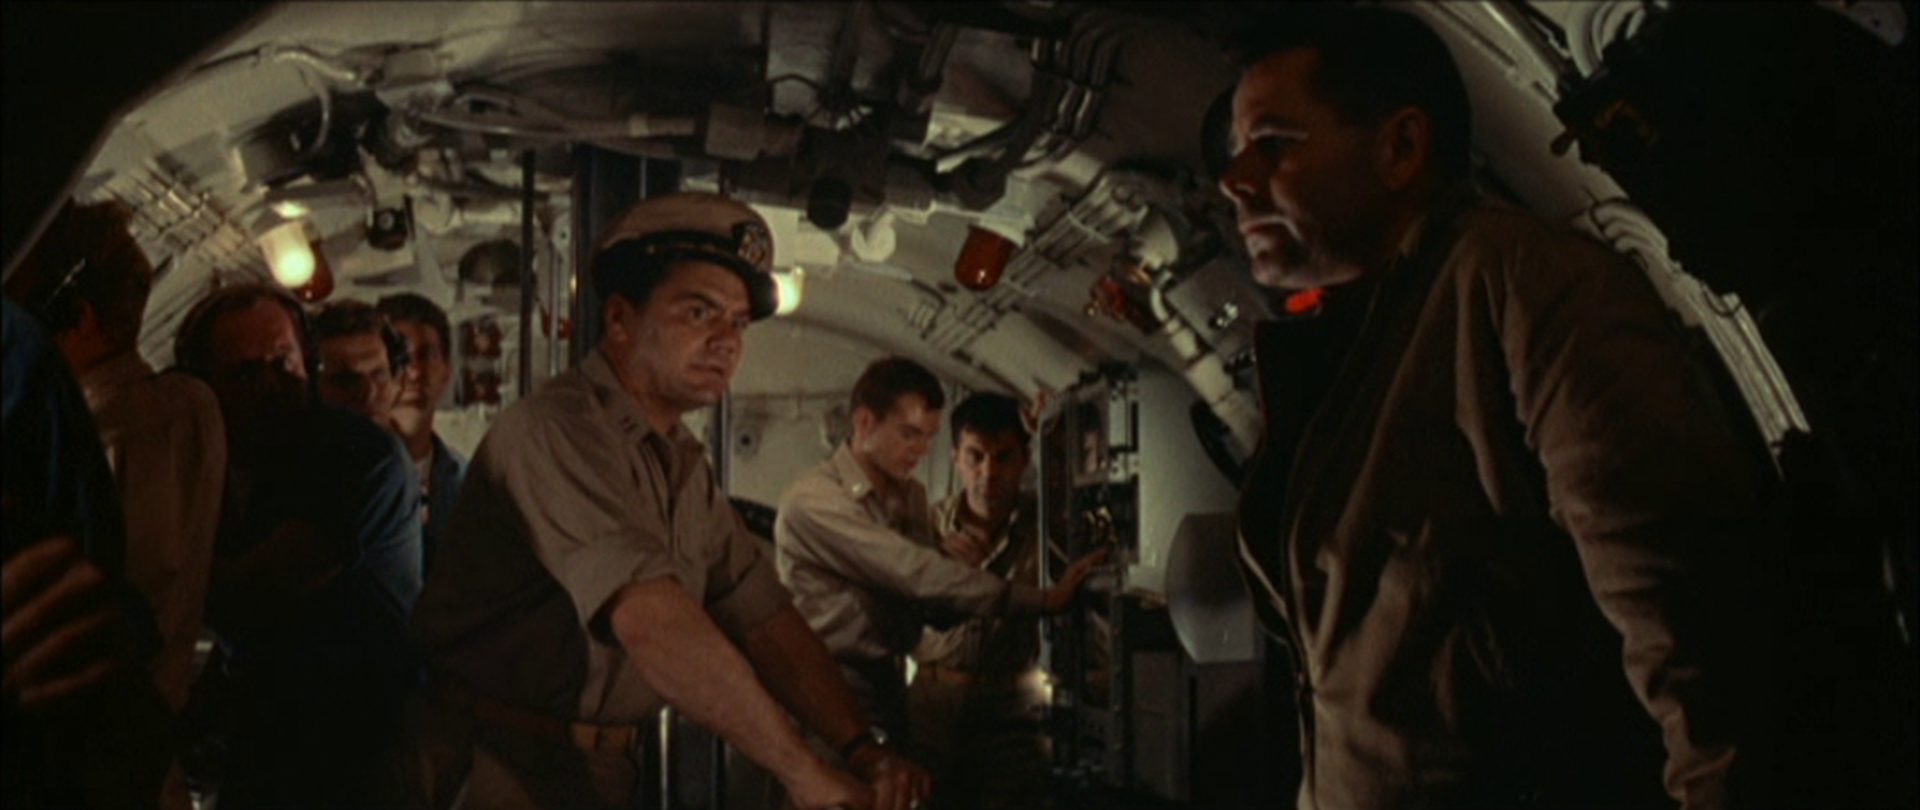 Blick in die Kommandozentrale des Navy-U-Bootes, in der Mitte Ernest Borgnine als Erster Offizier mit besorgtem Blick zum Kapitän, der düster ausgeleuchtet in nachdenklicher Haltung am Rand lehnt und von Glenn Ford gespielt wird; im Hintergrund mehrere Seeleute.